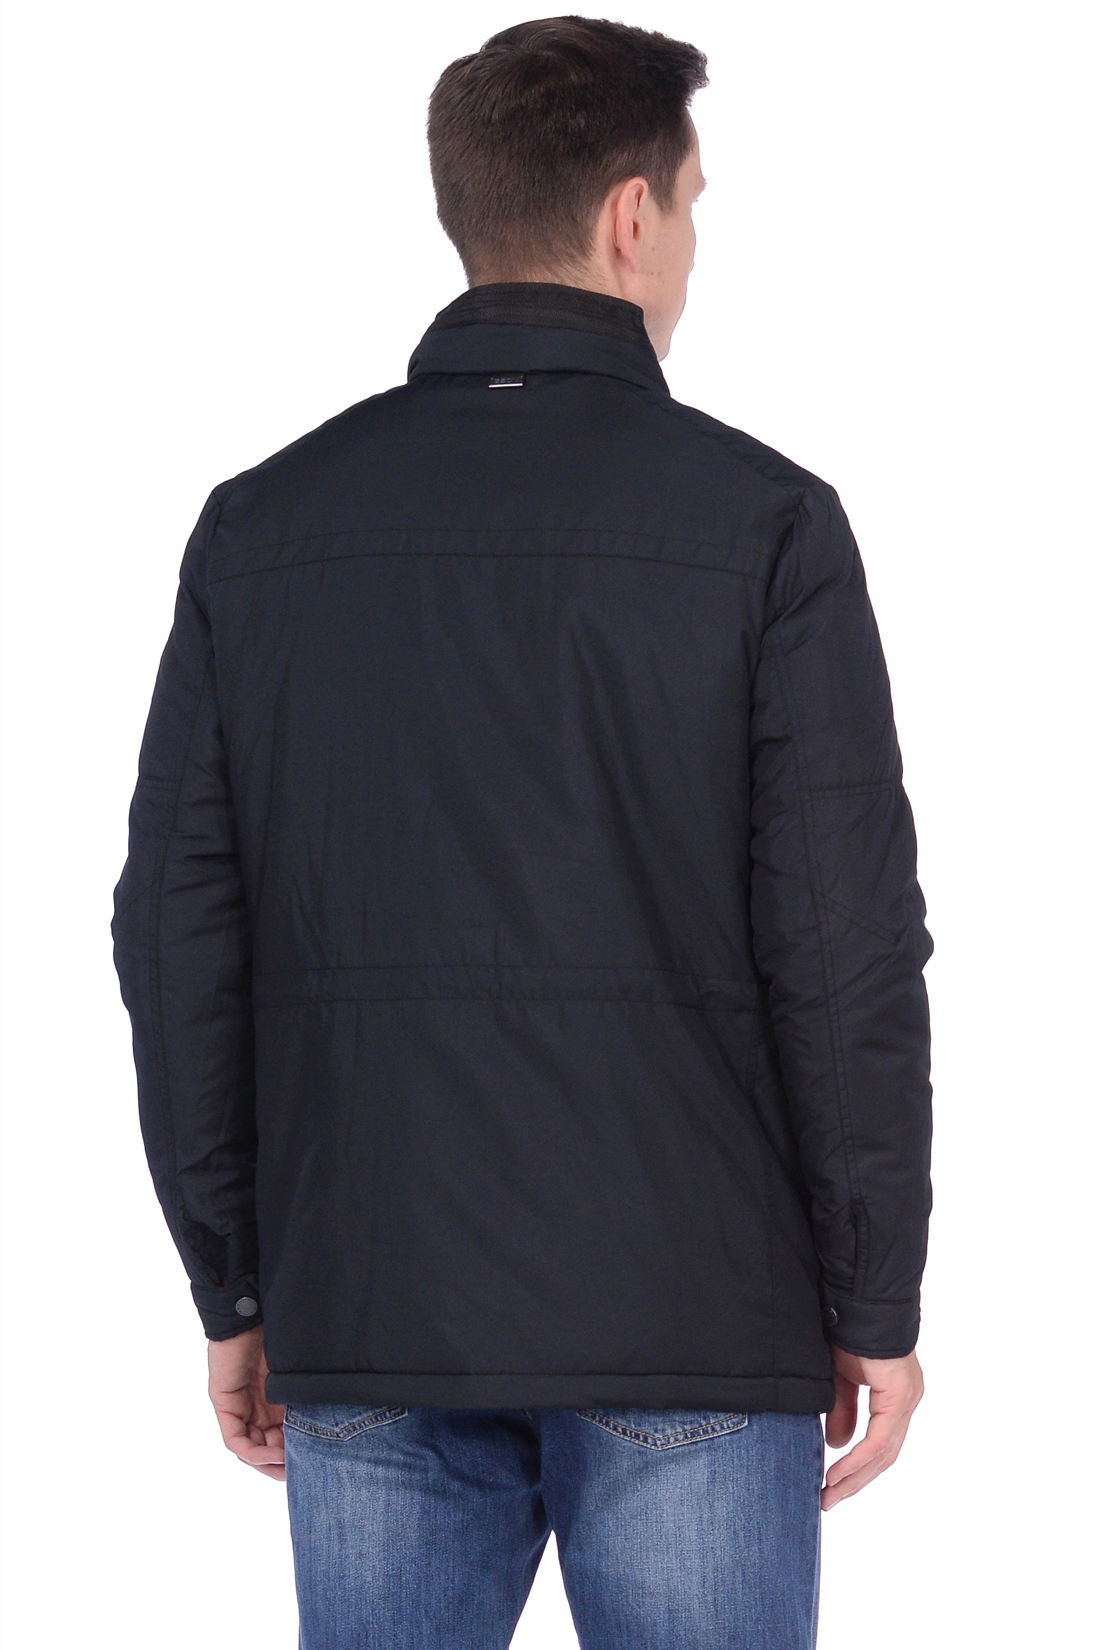 Куртка эргономичного кроя (арт. baon B538513), размер 3XL, цвет черный Куртка эргономичного кроя (арт. baon B538513) - фото 2